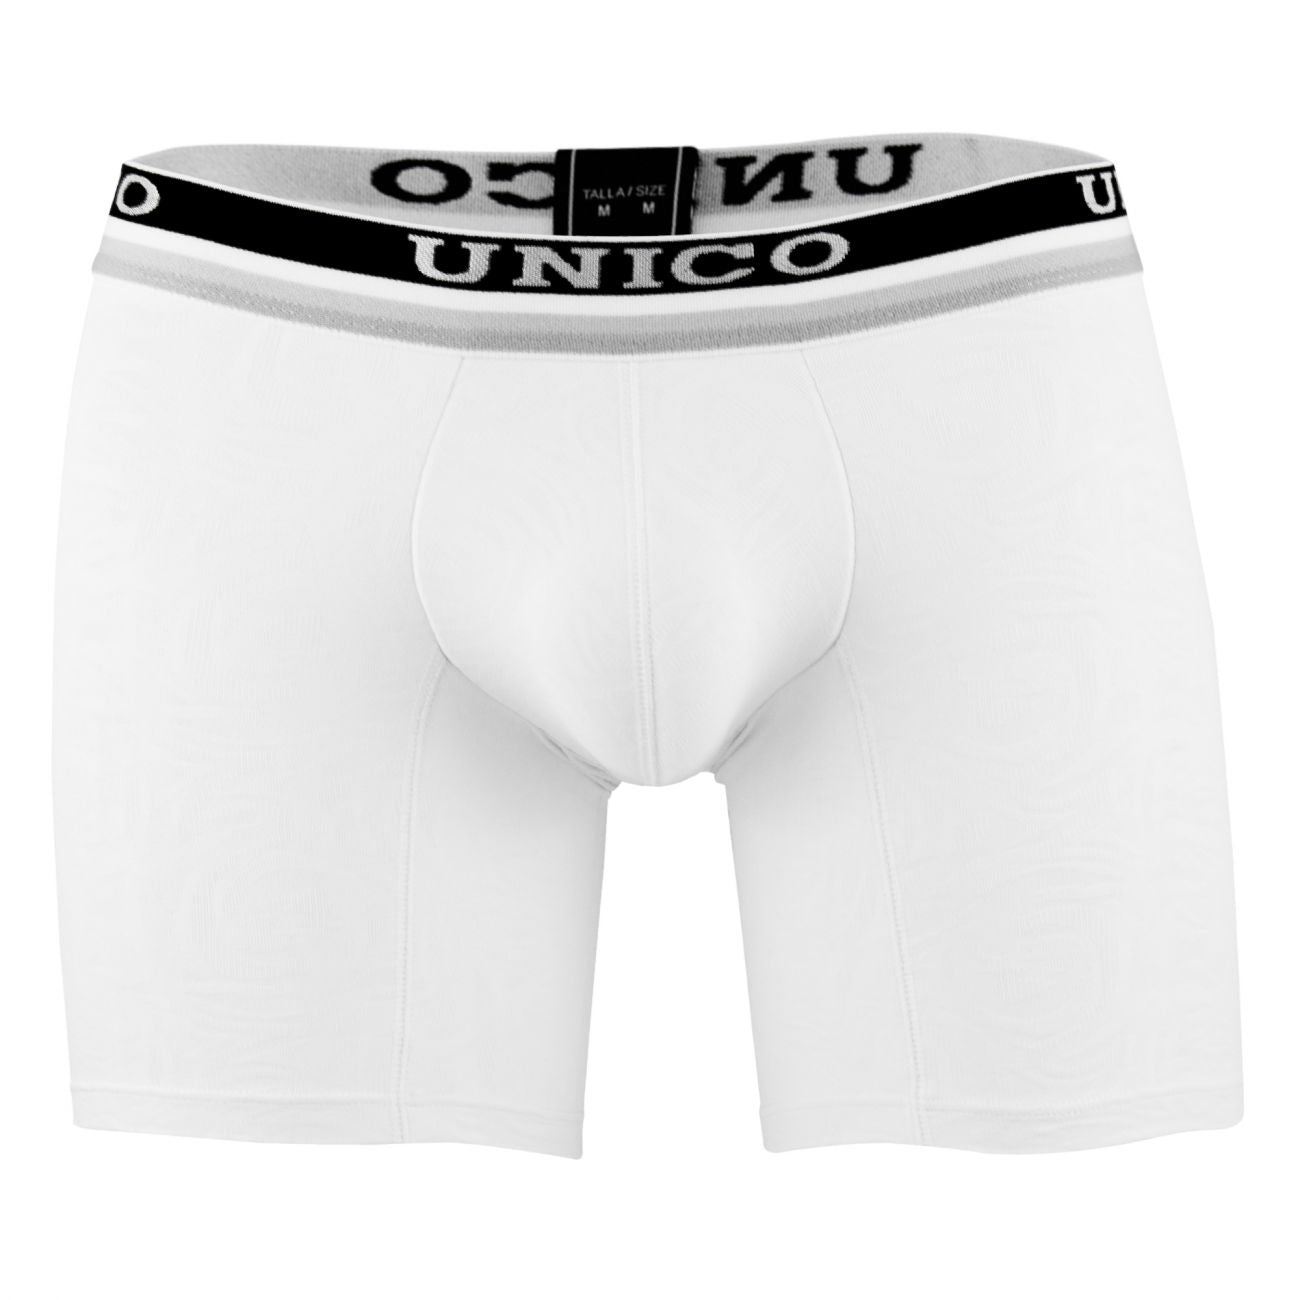 Unico 1802010023000 Boxer Briefs Reconnect White